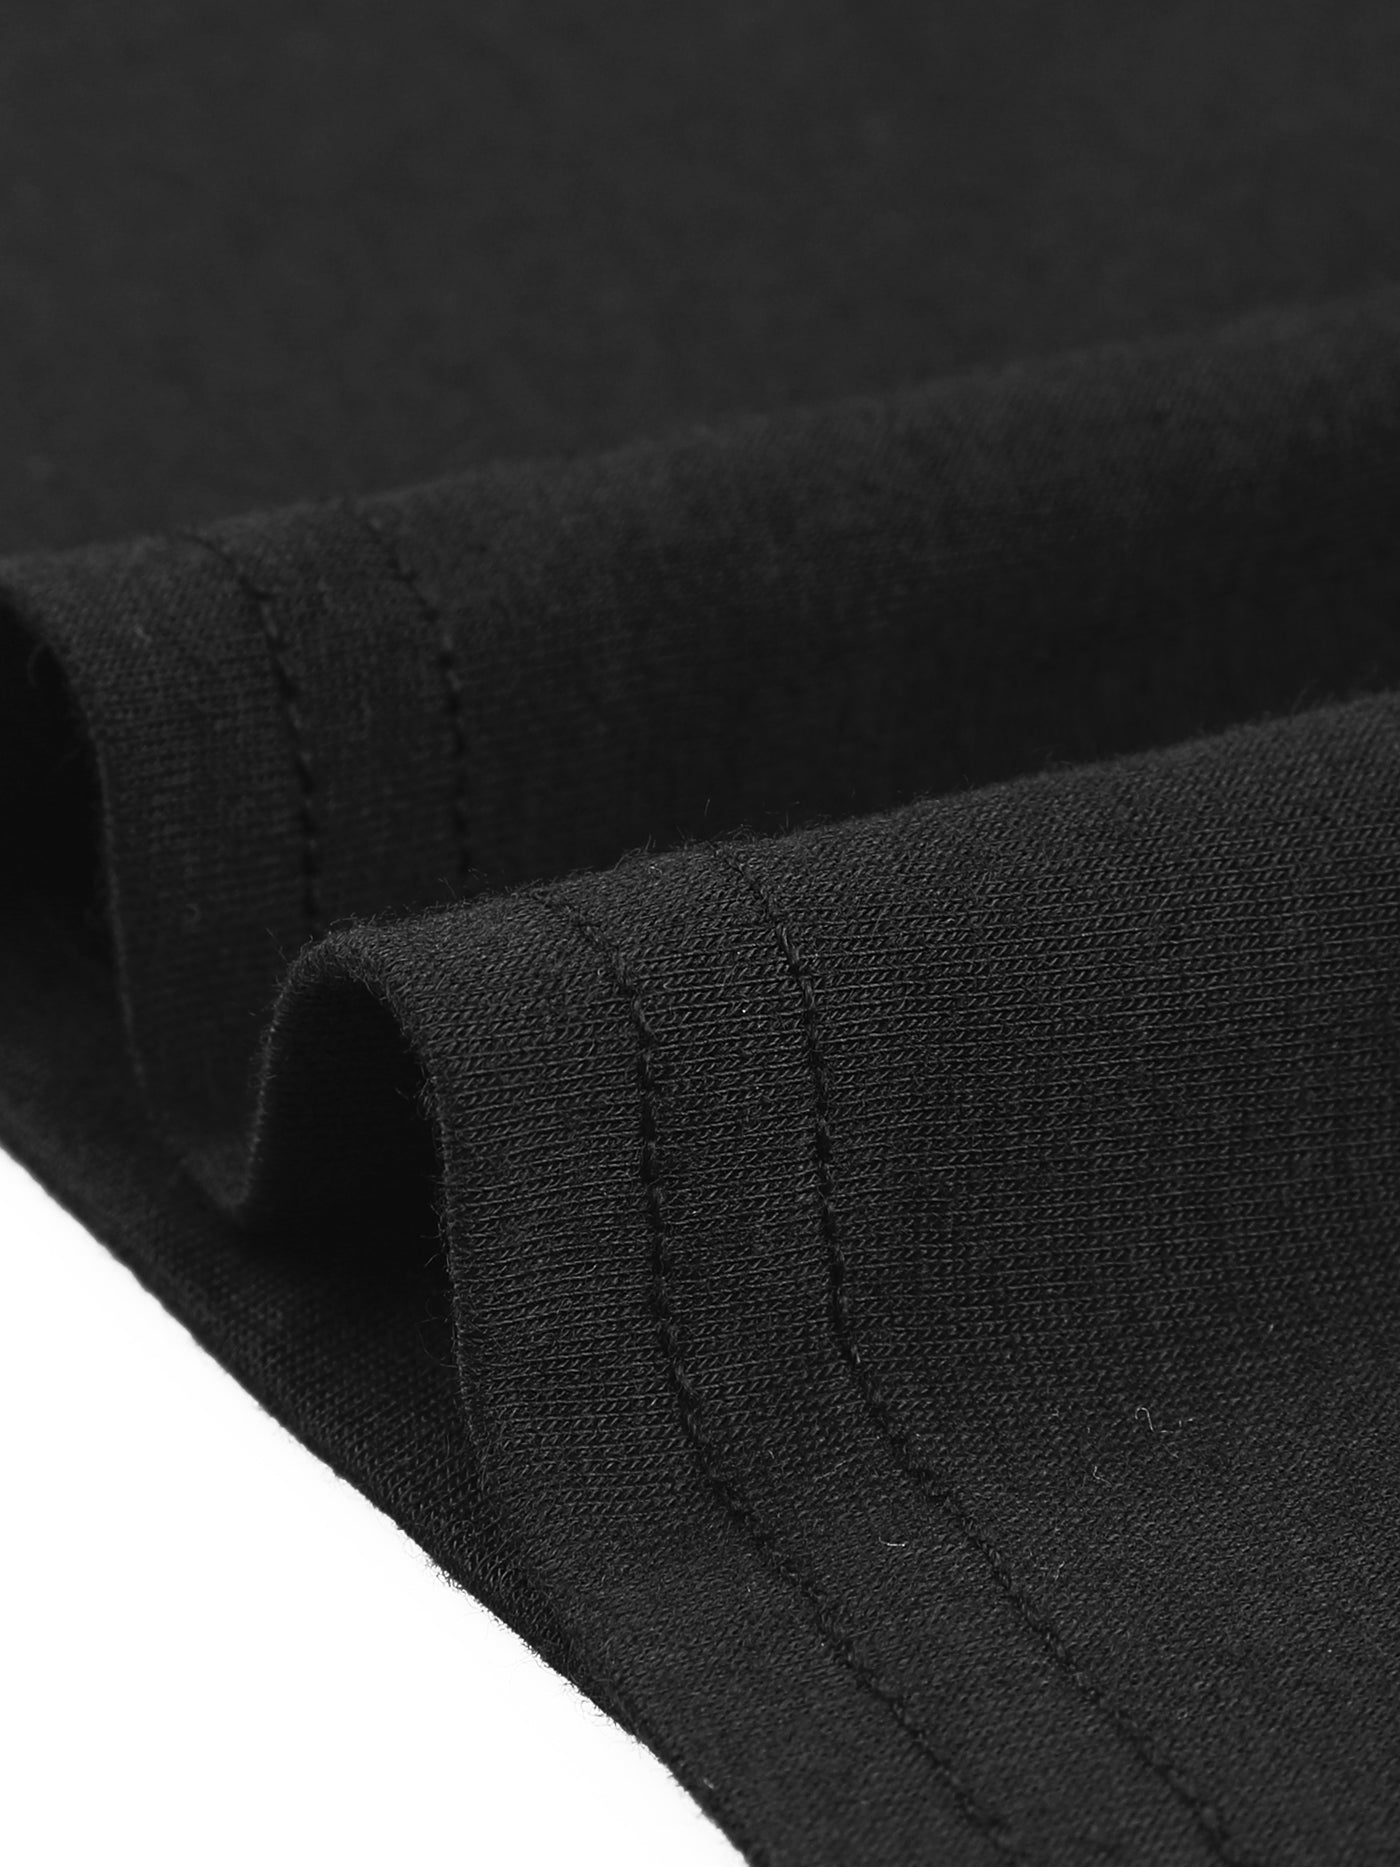 Bublédon Plus Size Cardigan for Women Soft 3/4 Sleeve Open Front Cropped Shrug Bolero Cardigans Jacket